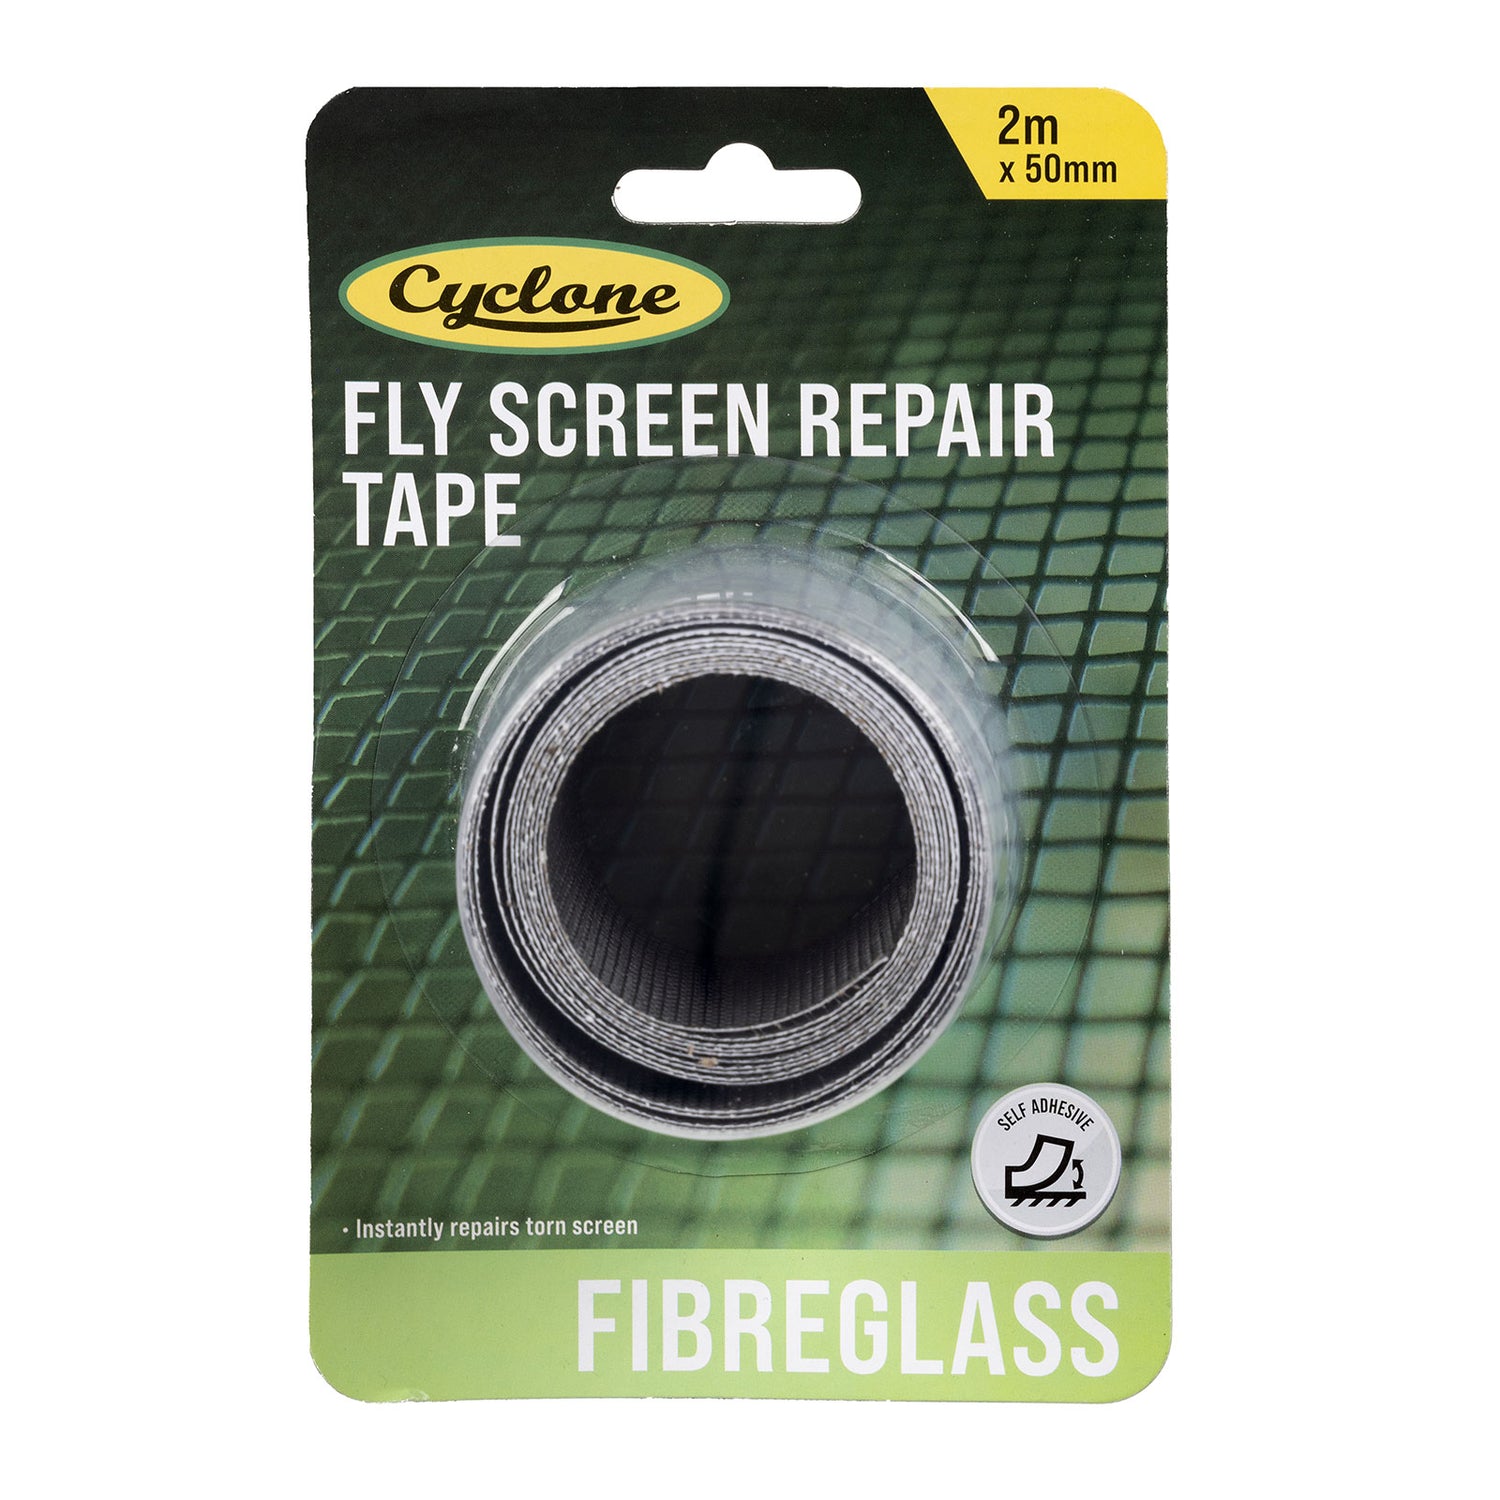 Fibreglass Flyscreen Repair Tape